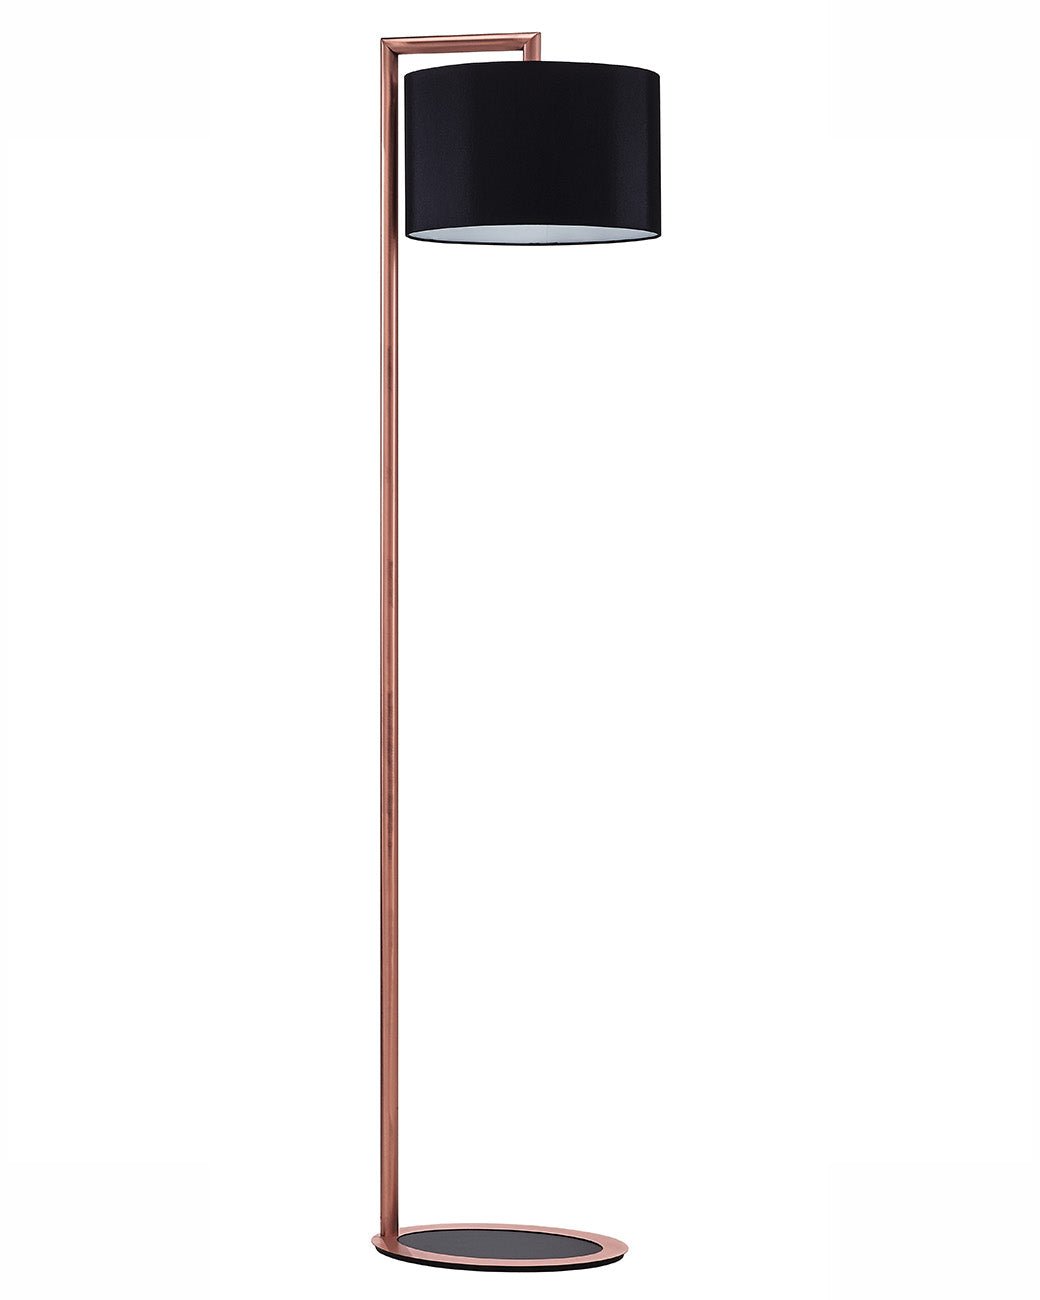 Artinox - Ovline Vloerlamp koper mat - KOOT